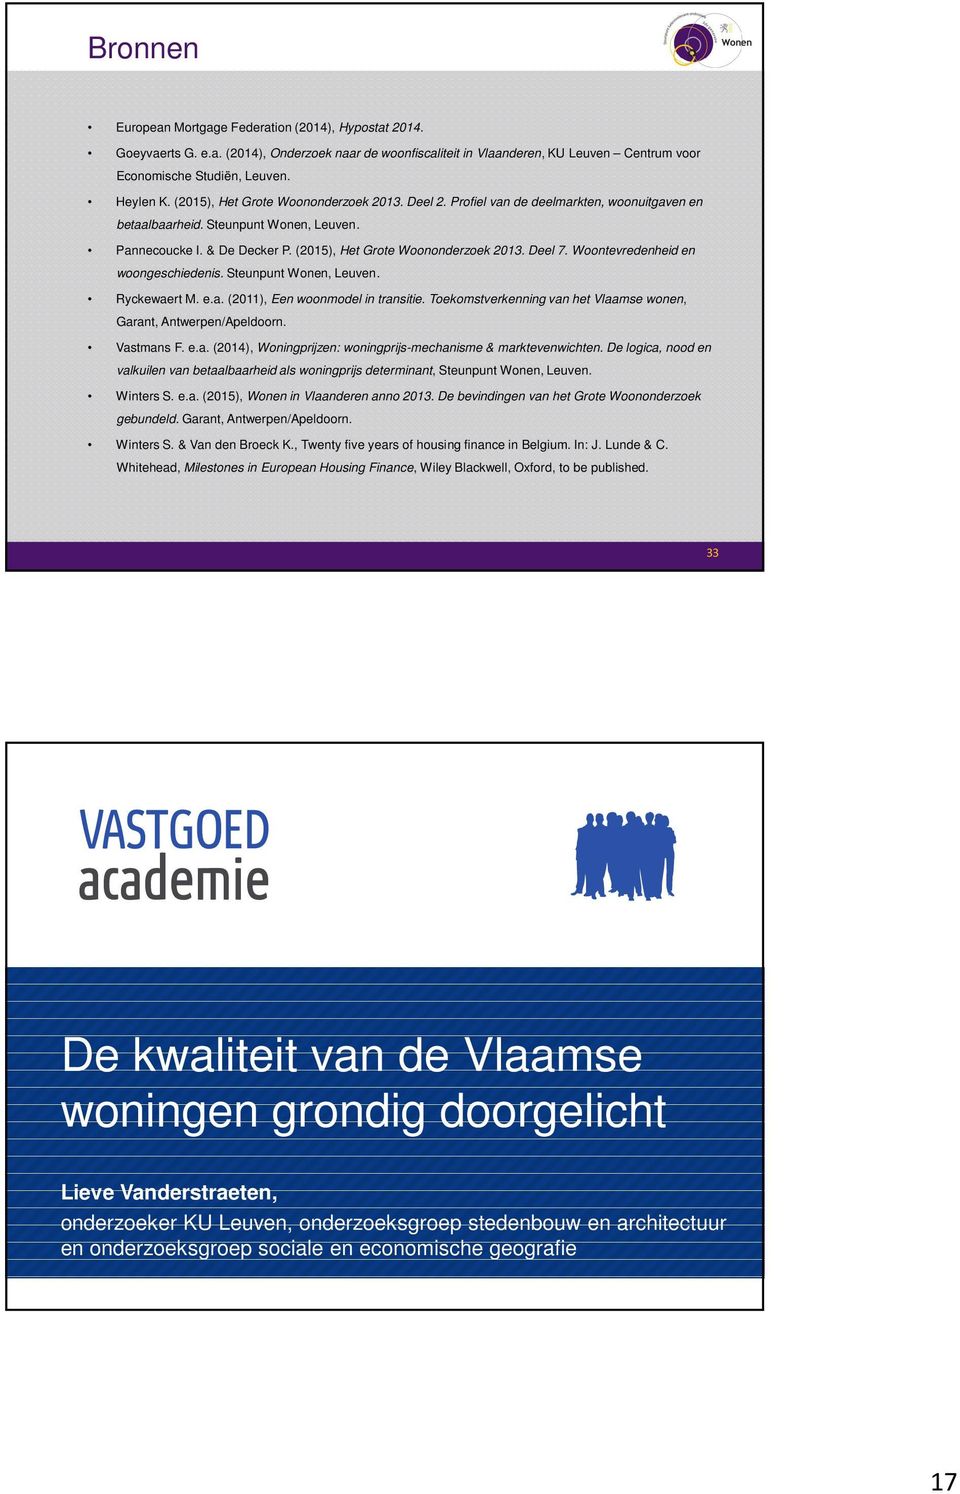 Deel 7. Woontevredenheid en woongeschiedenis. Steunpunt Wonen, Leuven. Ryckewaert M. e.a. (2011), Een woonmodel in transitie. Toekomstverkenning van het Vlaamse wonen, Garant, Antwerpen/Apeldoorn.